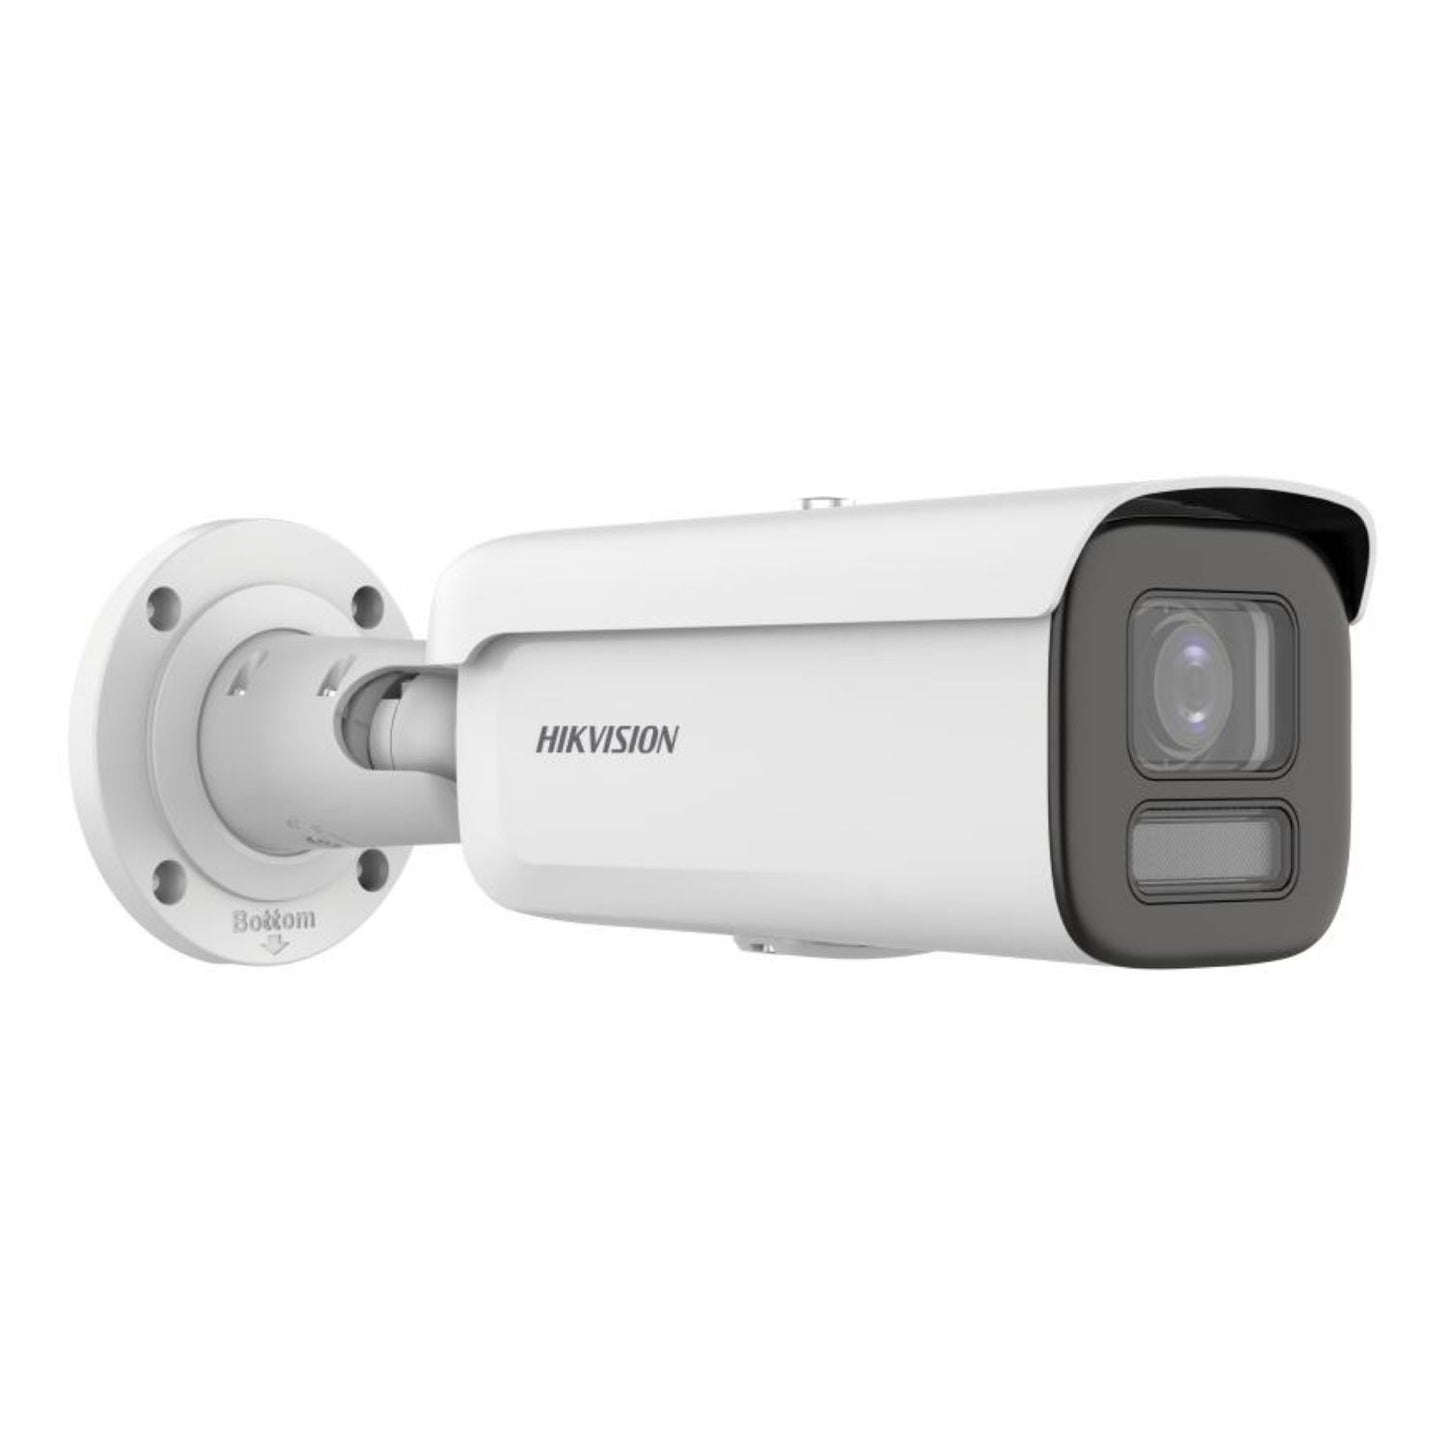 DS-2CD2687G2HT-LIZS Lampe hybride intelligente 2,8-12 mm - 8 MP avec caméra réseau Bullet à focale variable motorisée ColorVu